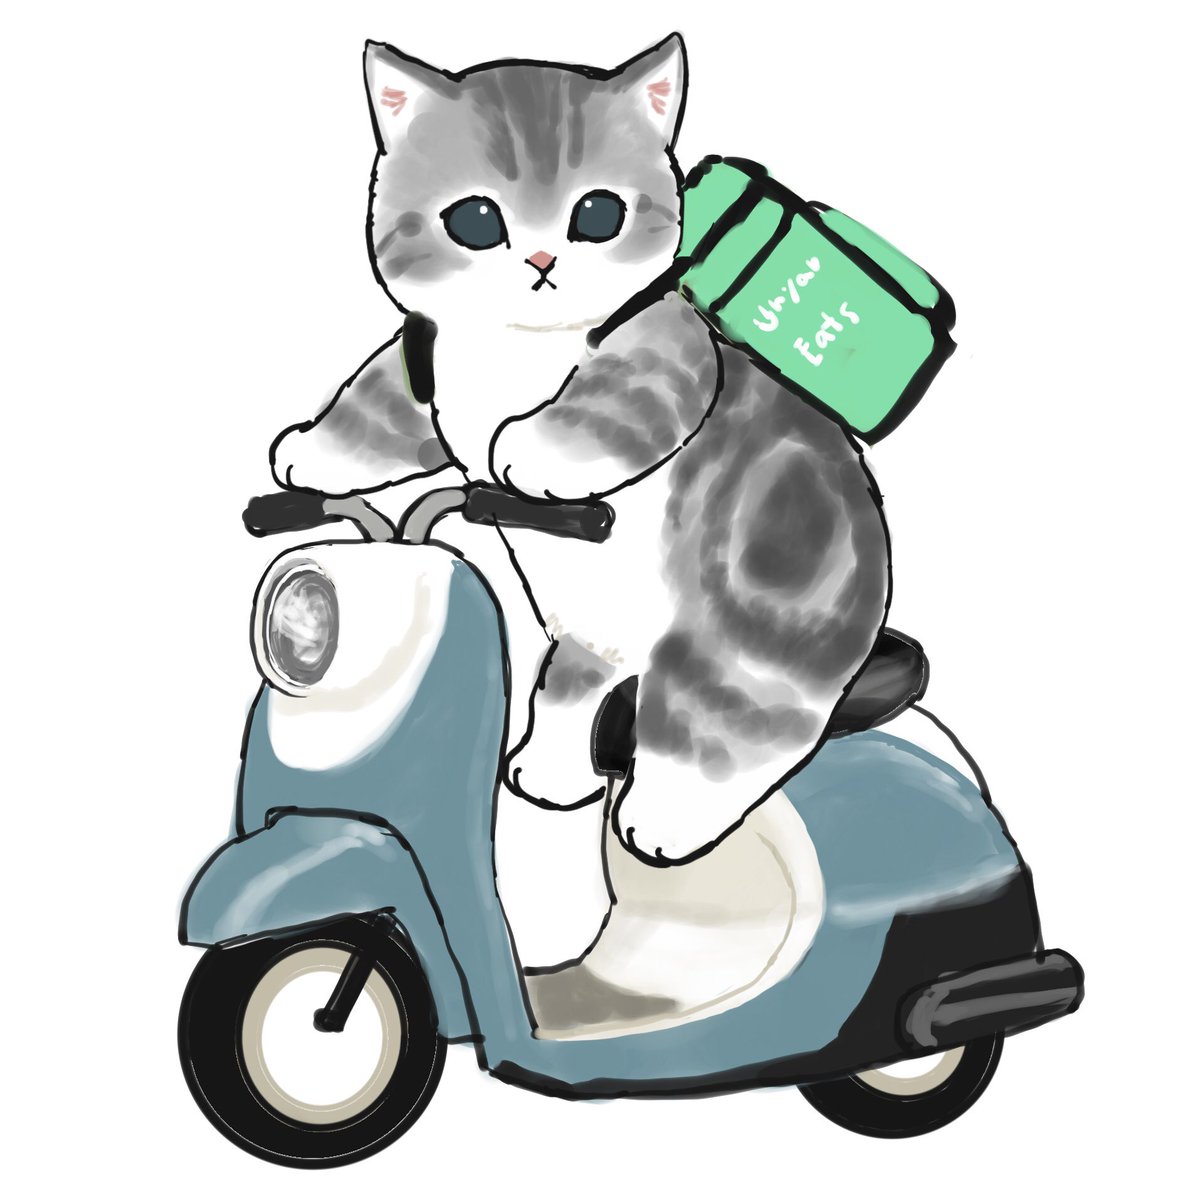 no humans ground vehicle motor vehicle white background cat simple background animal  illustration images